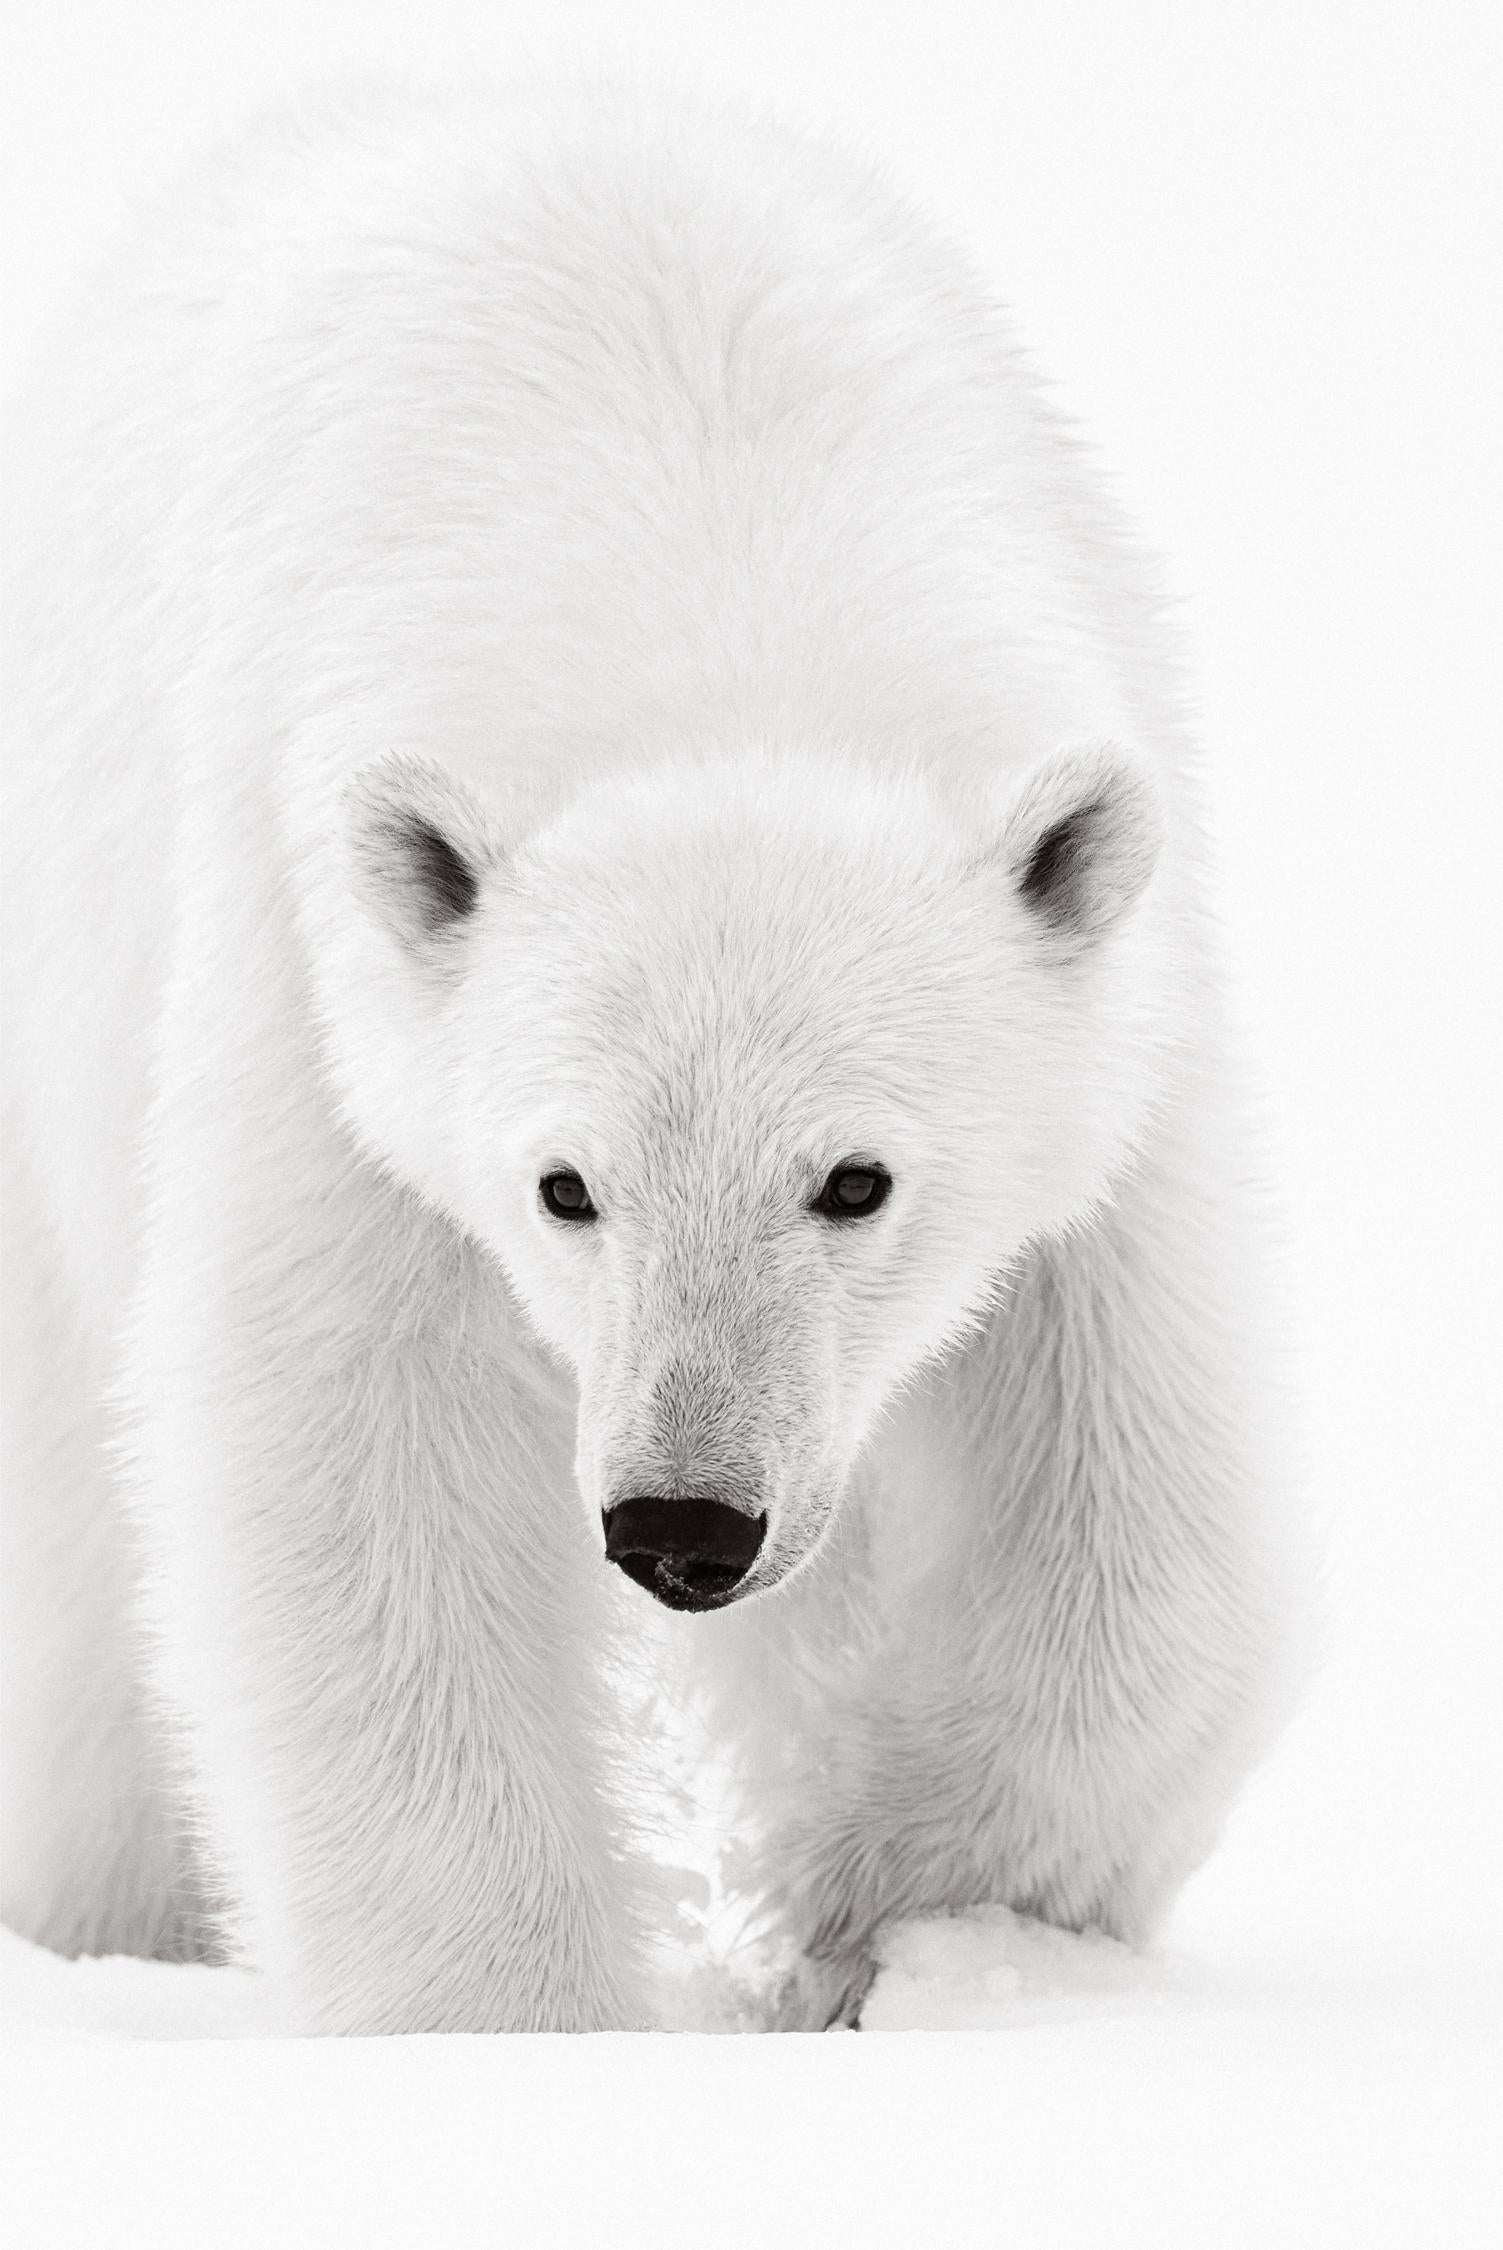 Drew Doggett Black and White Photograph – Intime Porträt eines Polarbären, Schwarz-Weiß-Fotografie